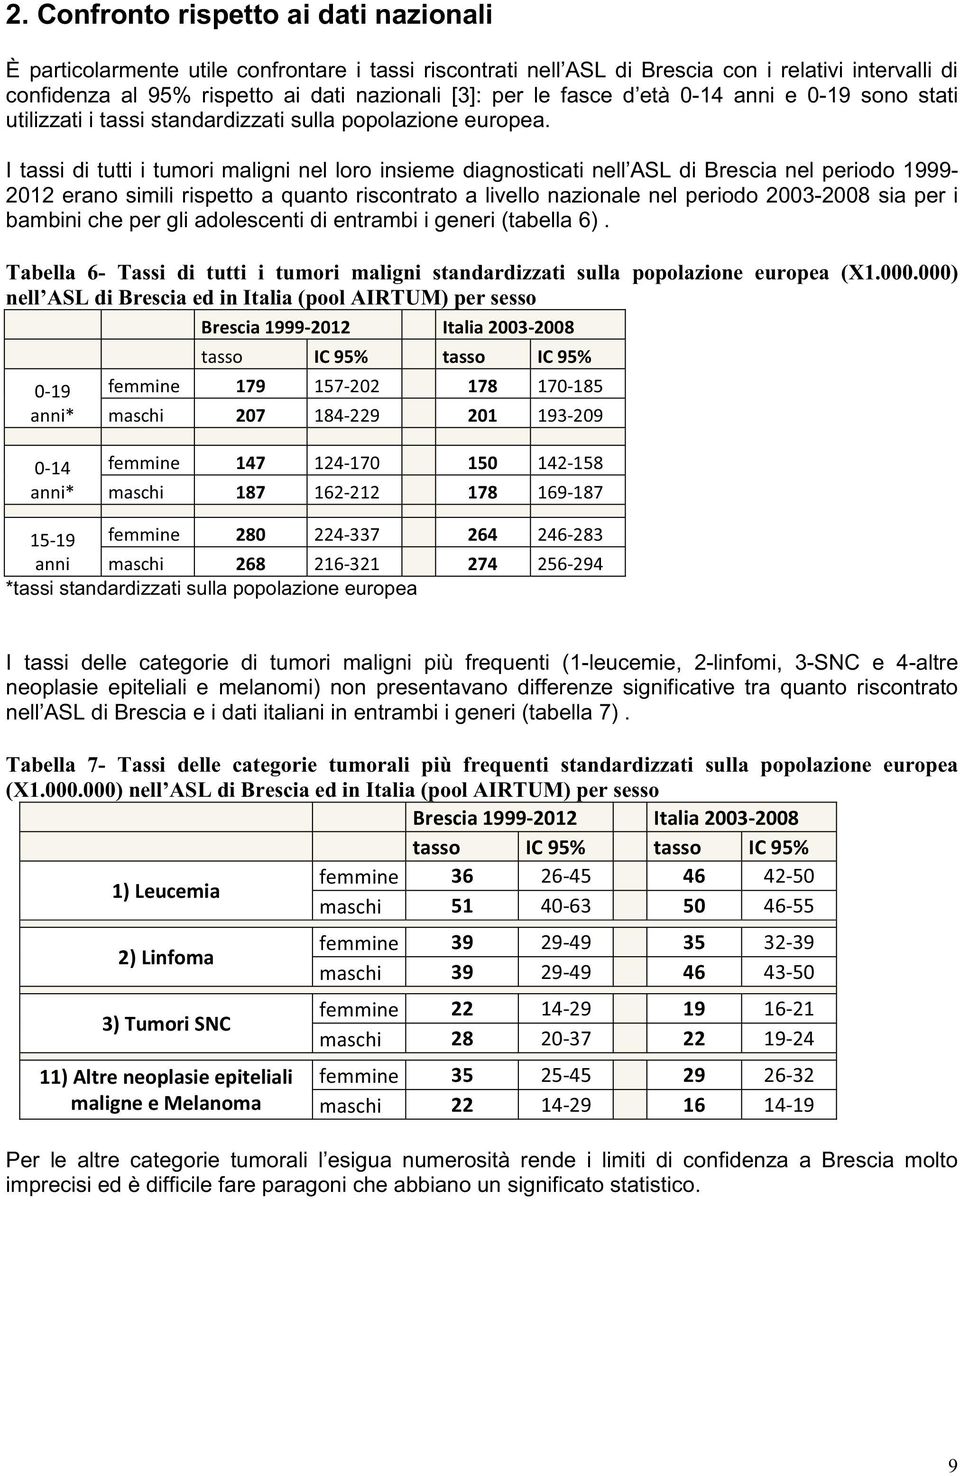 I tassi di tutti i tumori maligni nel loro insieme diagnosticati nell ASL di Brescia nel periodo 1999-2012 erano simili rispetto a quanto riscontrato a livello nazionale nel periodo 2003-2008 sia per